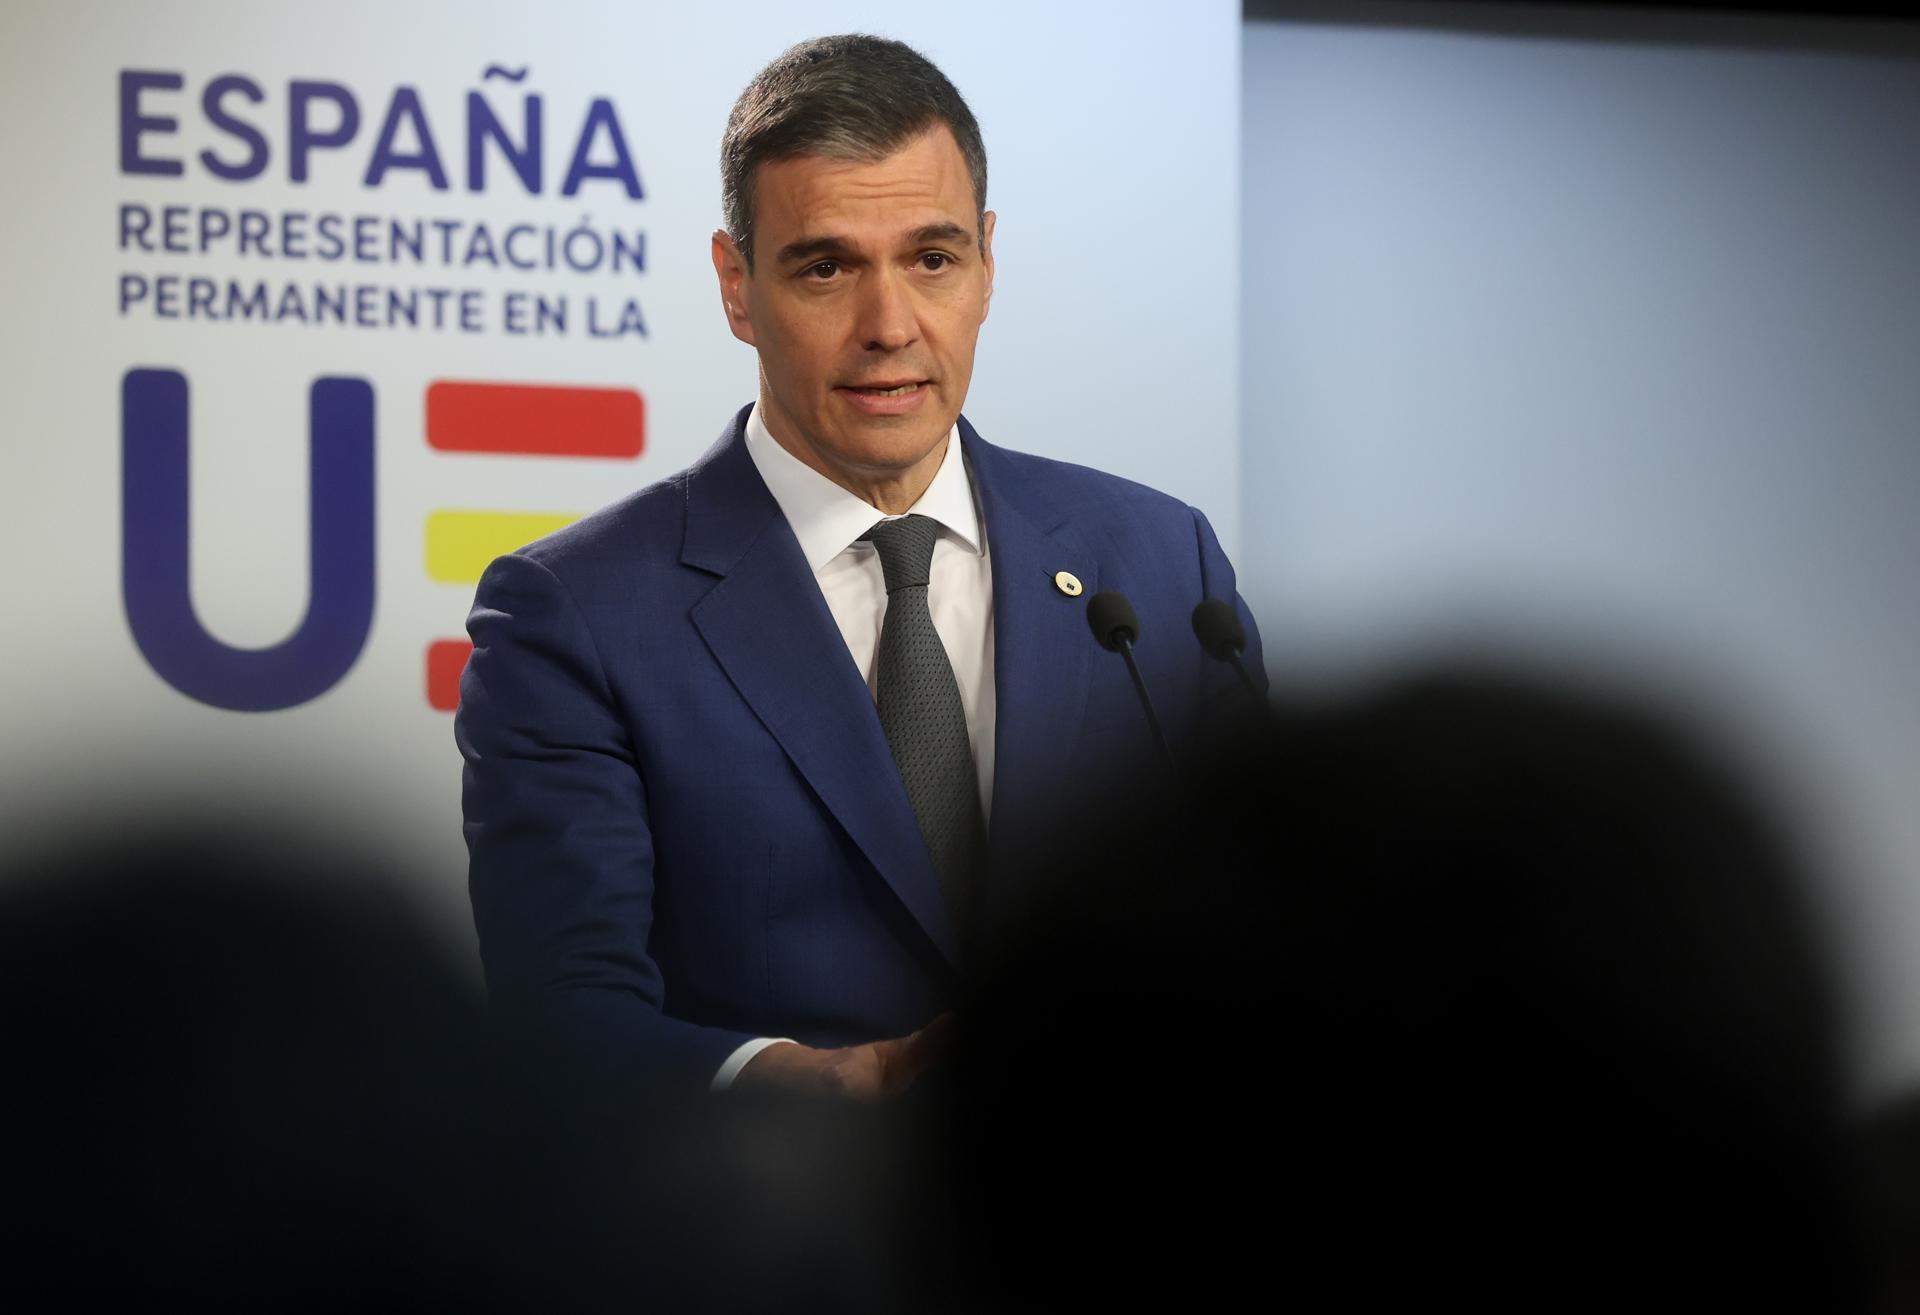 Així recull la premsa internacional la continuïtat de Pedro Sánchez al capdavant del govern espanyol